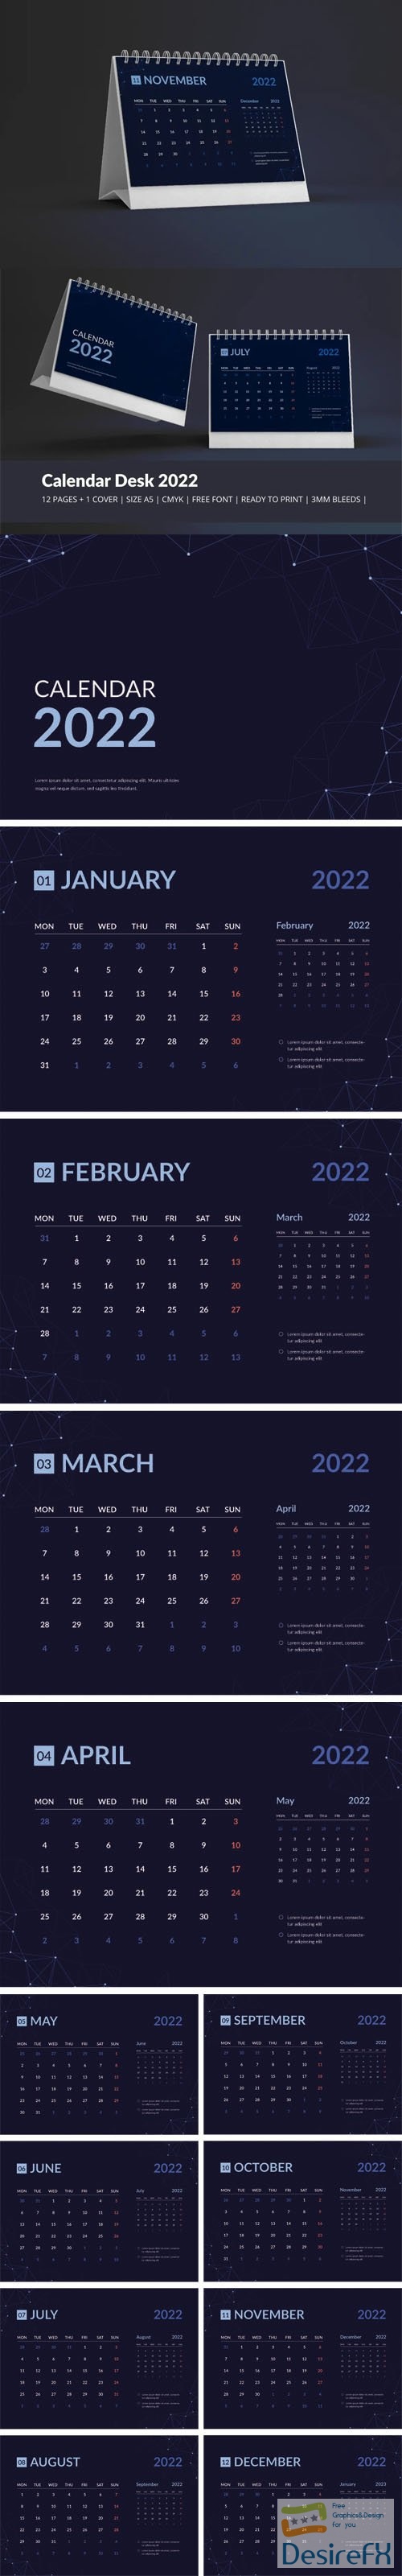 Galaxy Calendar Desk 2022 Theme Vector Template